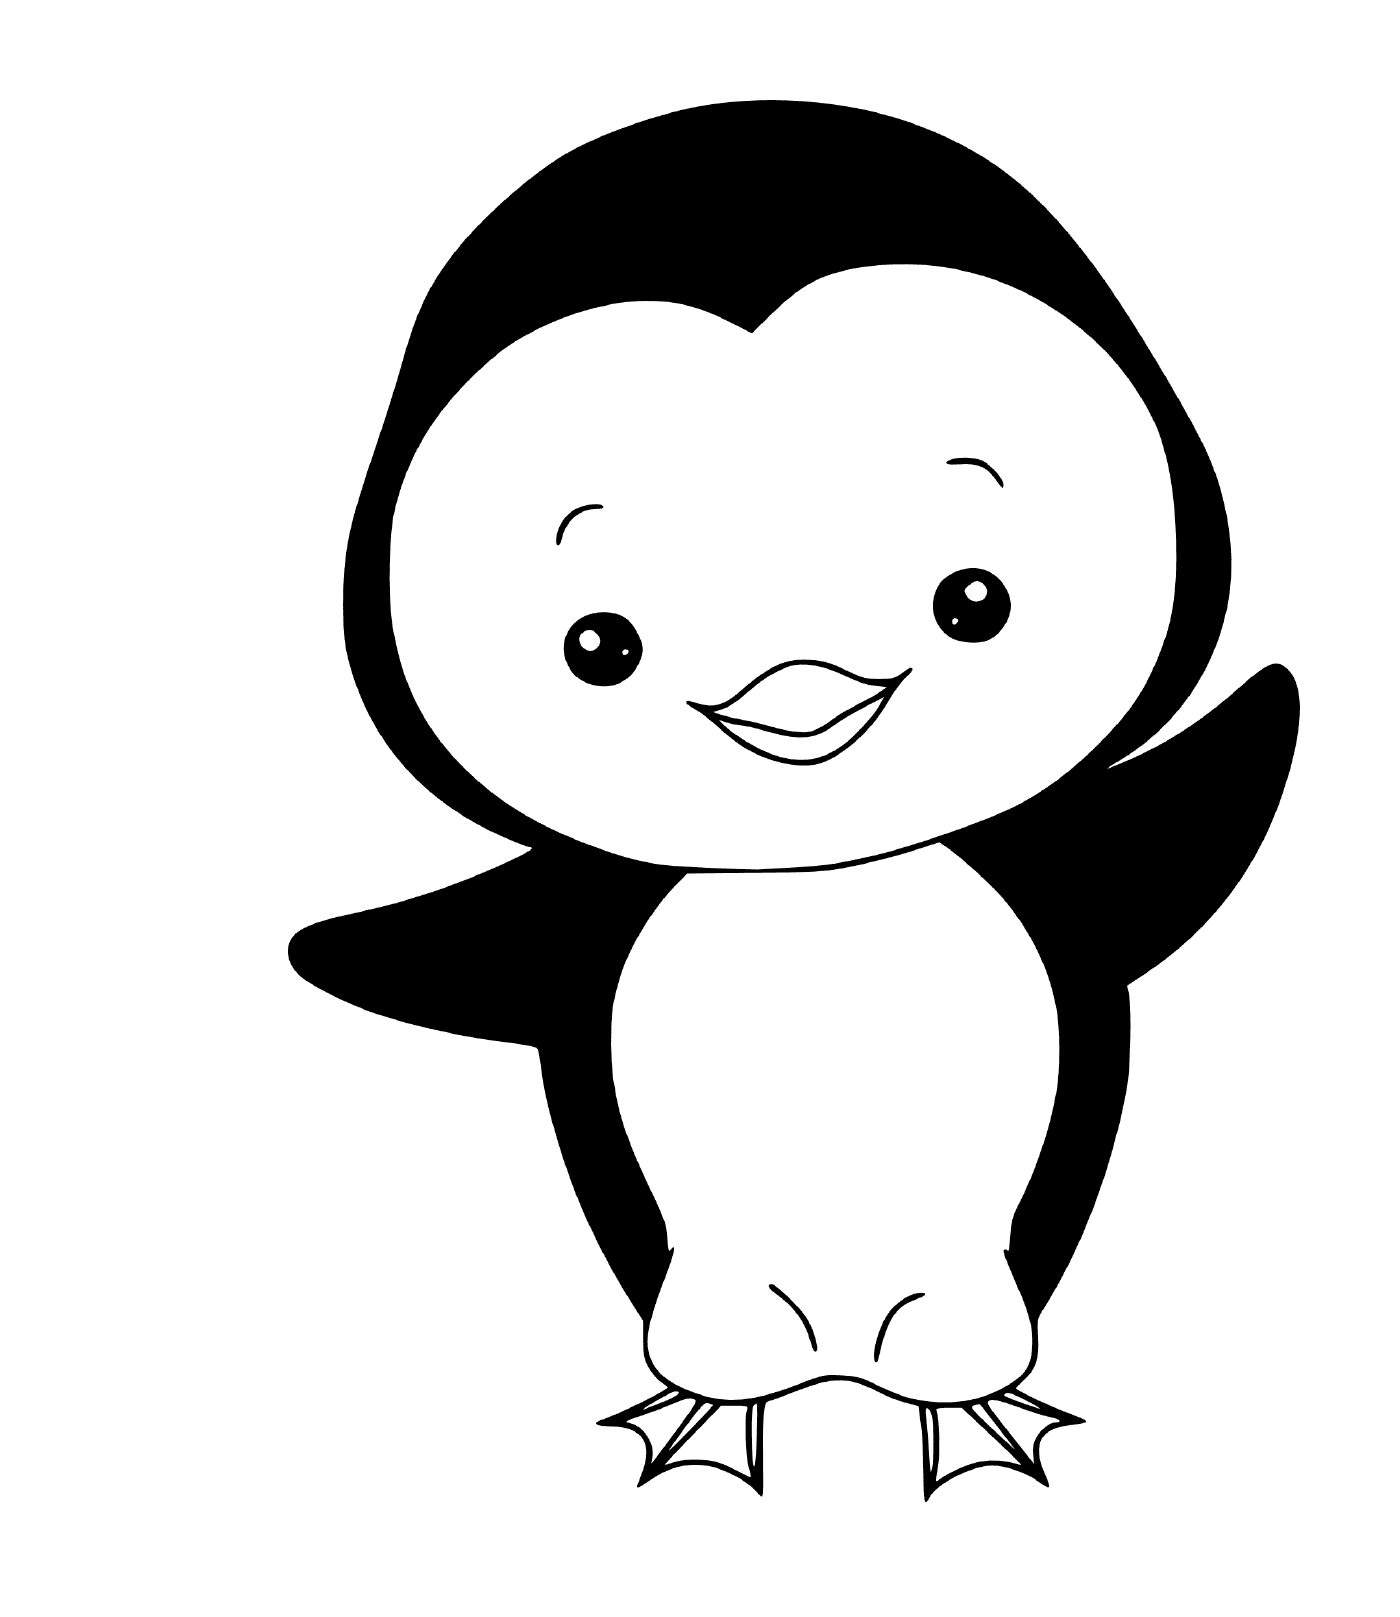  Penguin easy to draw 